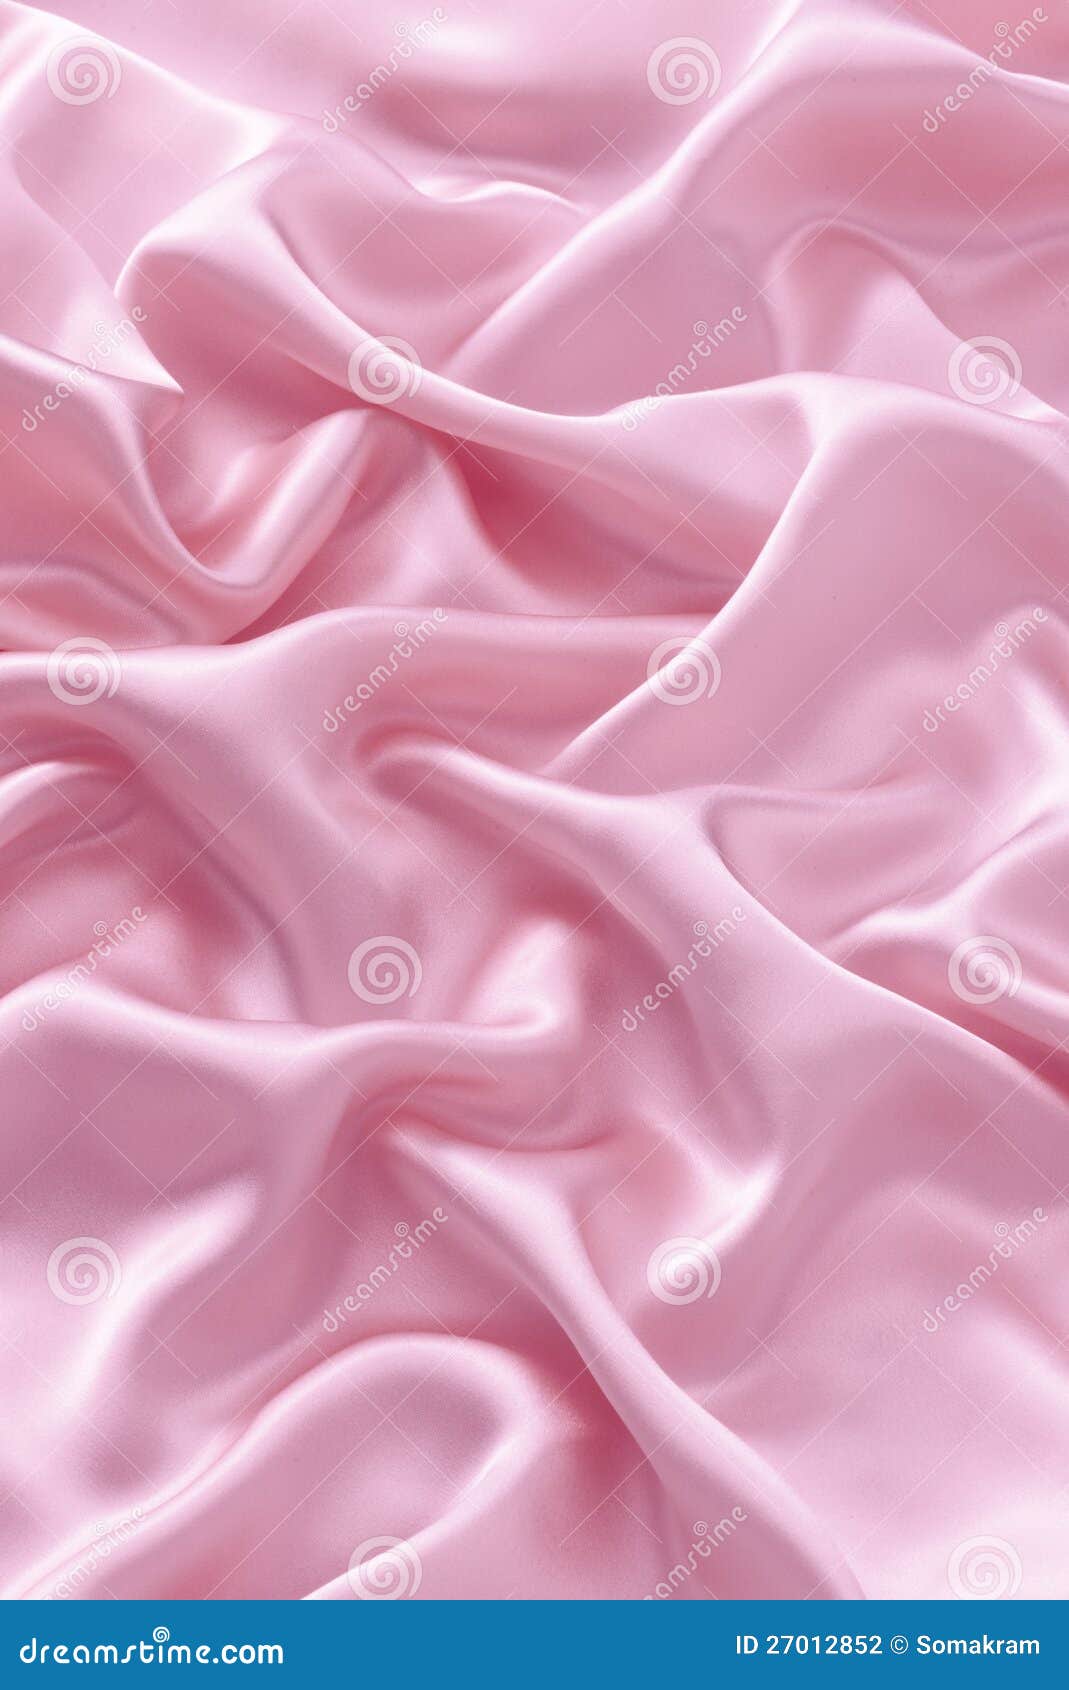 pink silk